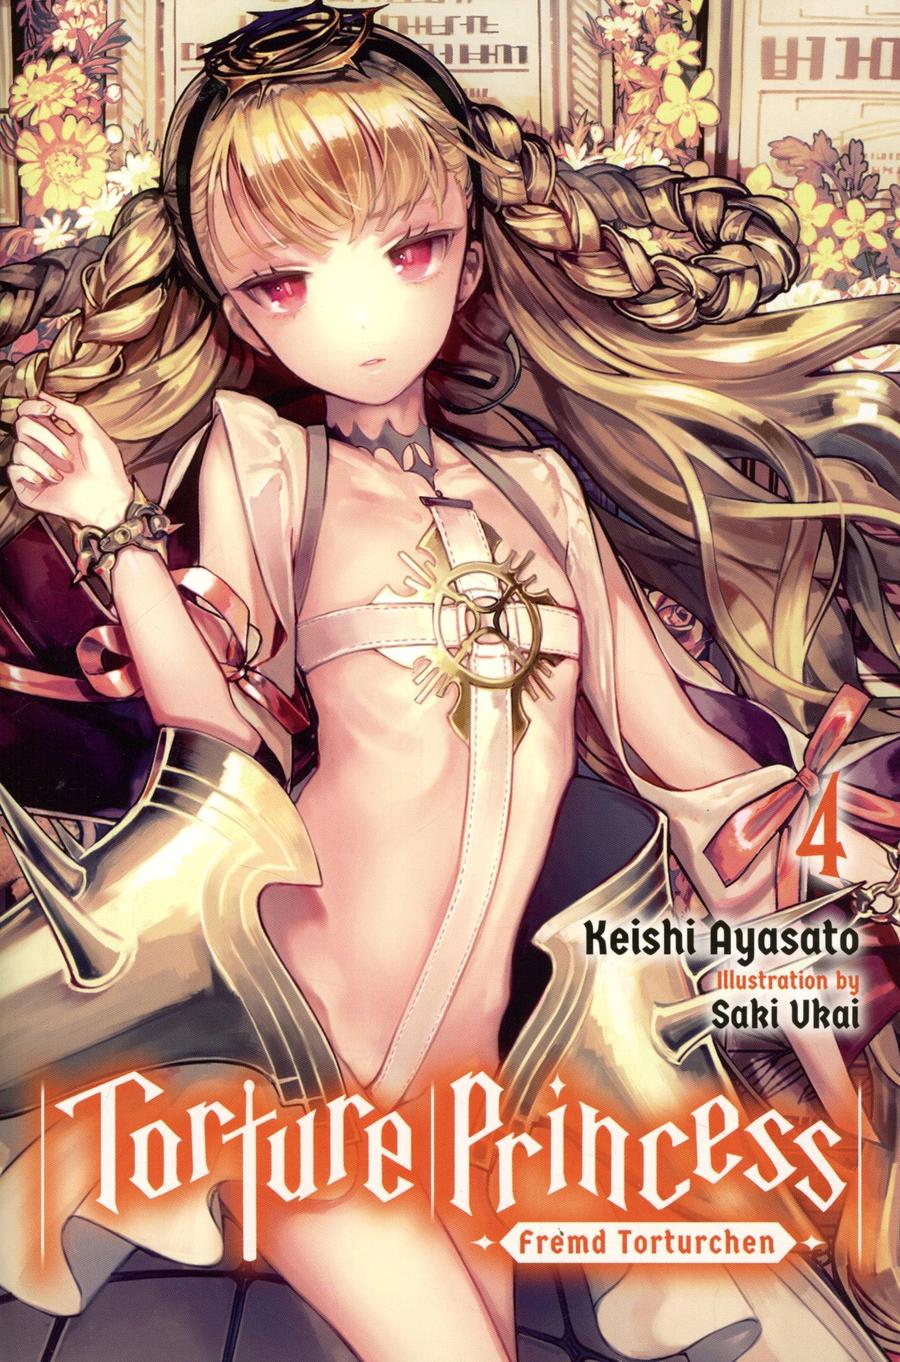 Torture Princess Fremd Torturchen Light Novel Vol 4